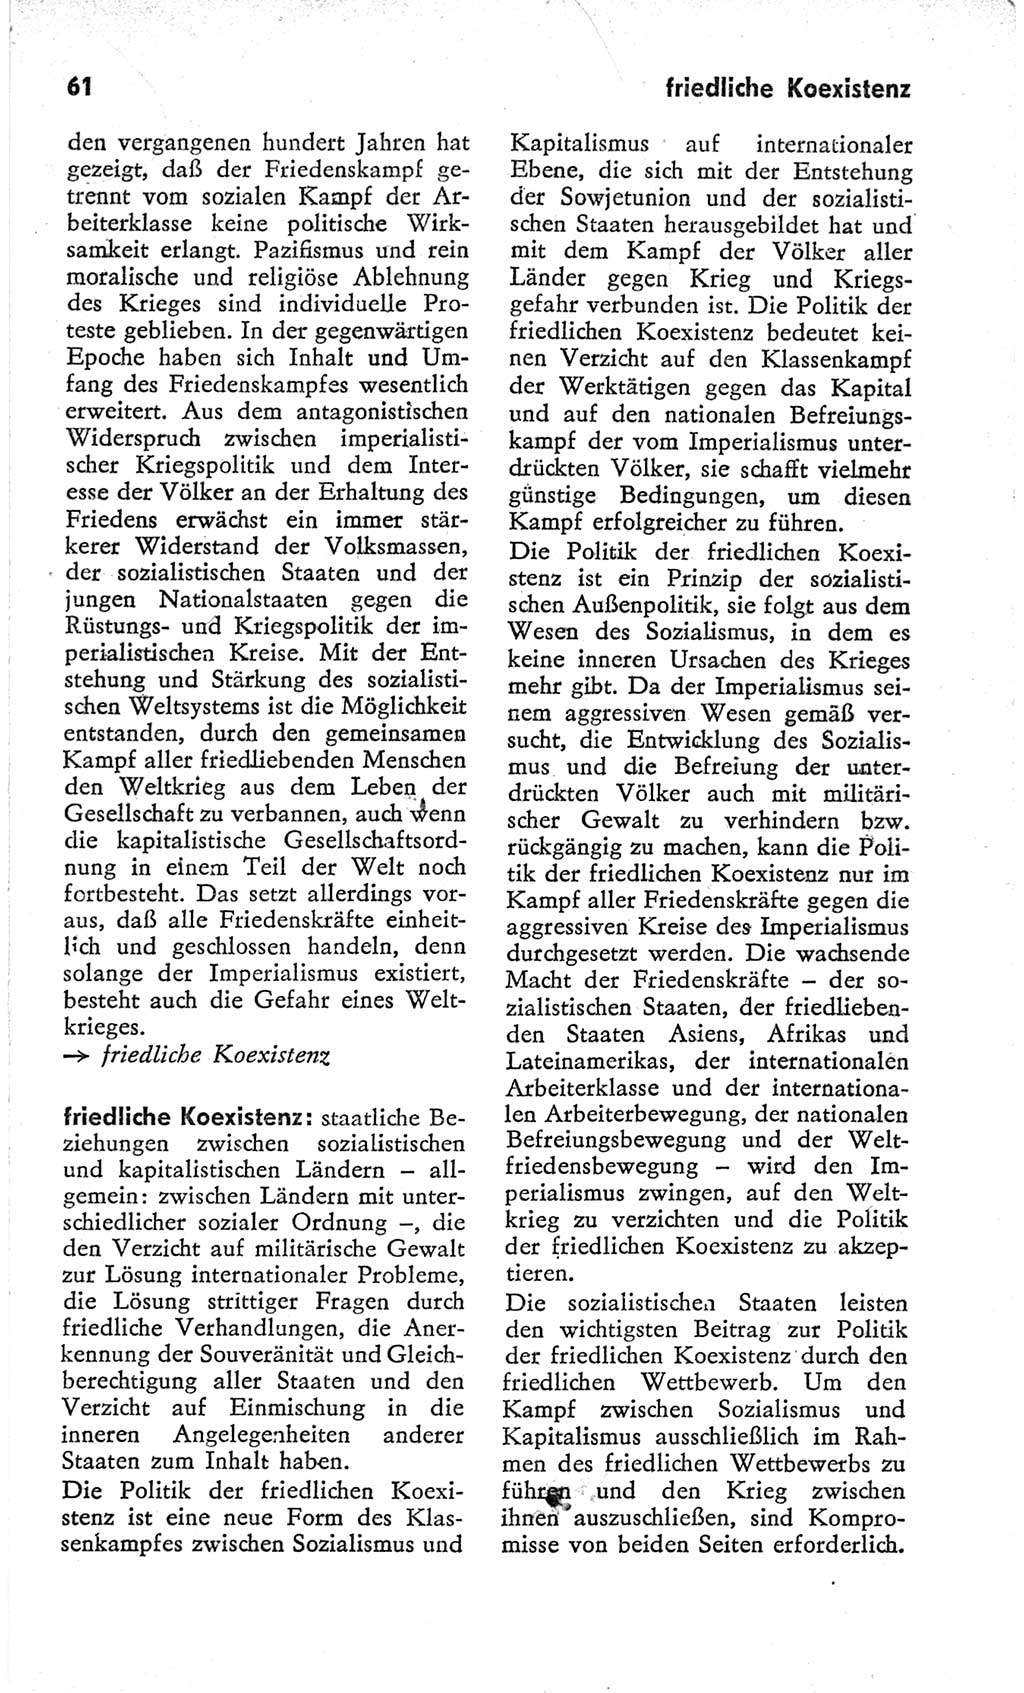 Kleines Wörterbuch der marxistisch-leninistischen Philosophie [Deutsche Demokratische Republik (DDR)] 1966, Seite 61 (Kl. Wb. ML Phil. DDR 1966, S. 61)